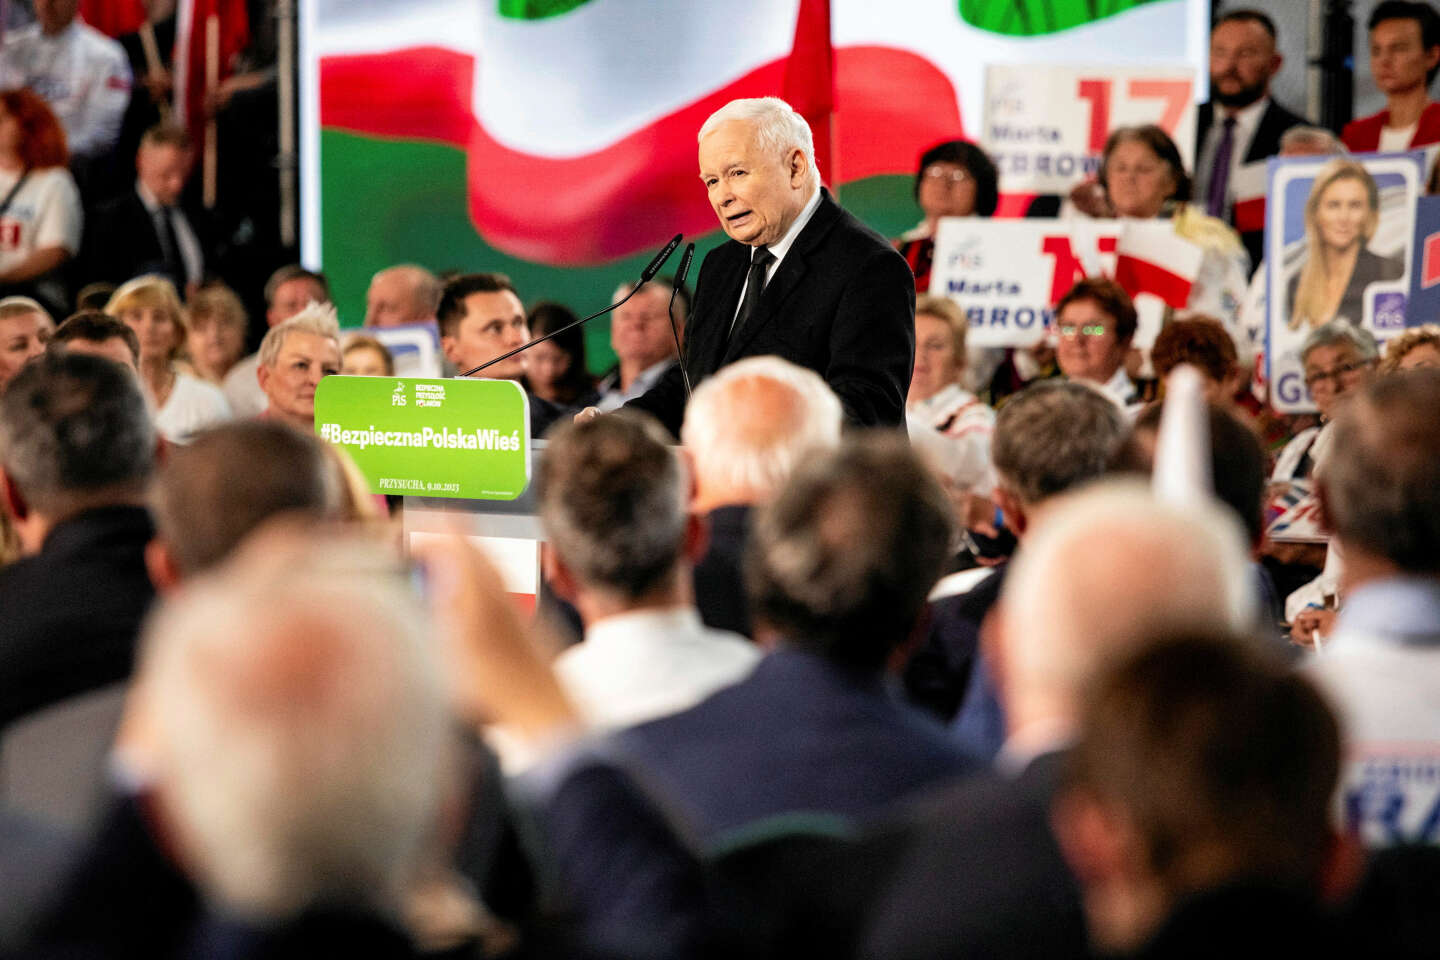 W Polsce narodowi konserwatyści cieszą się korzystną sytuacją gospodarczą